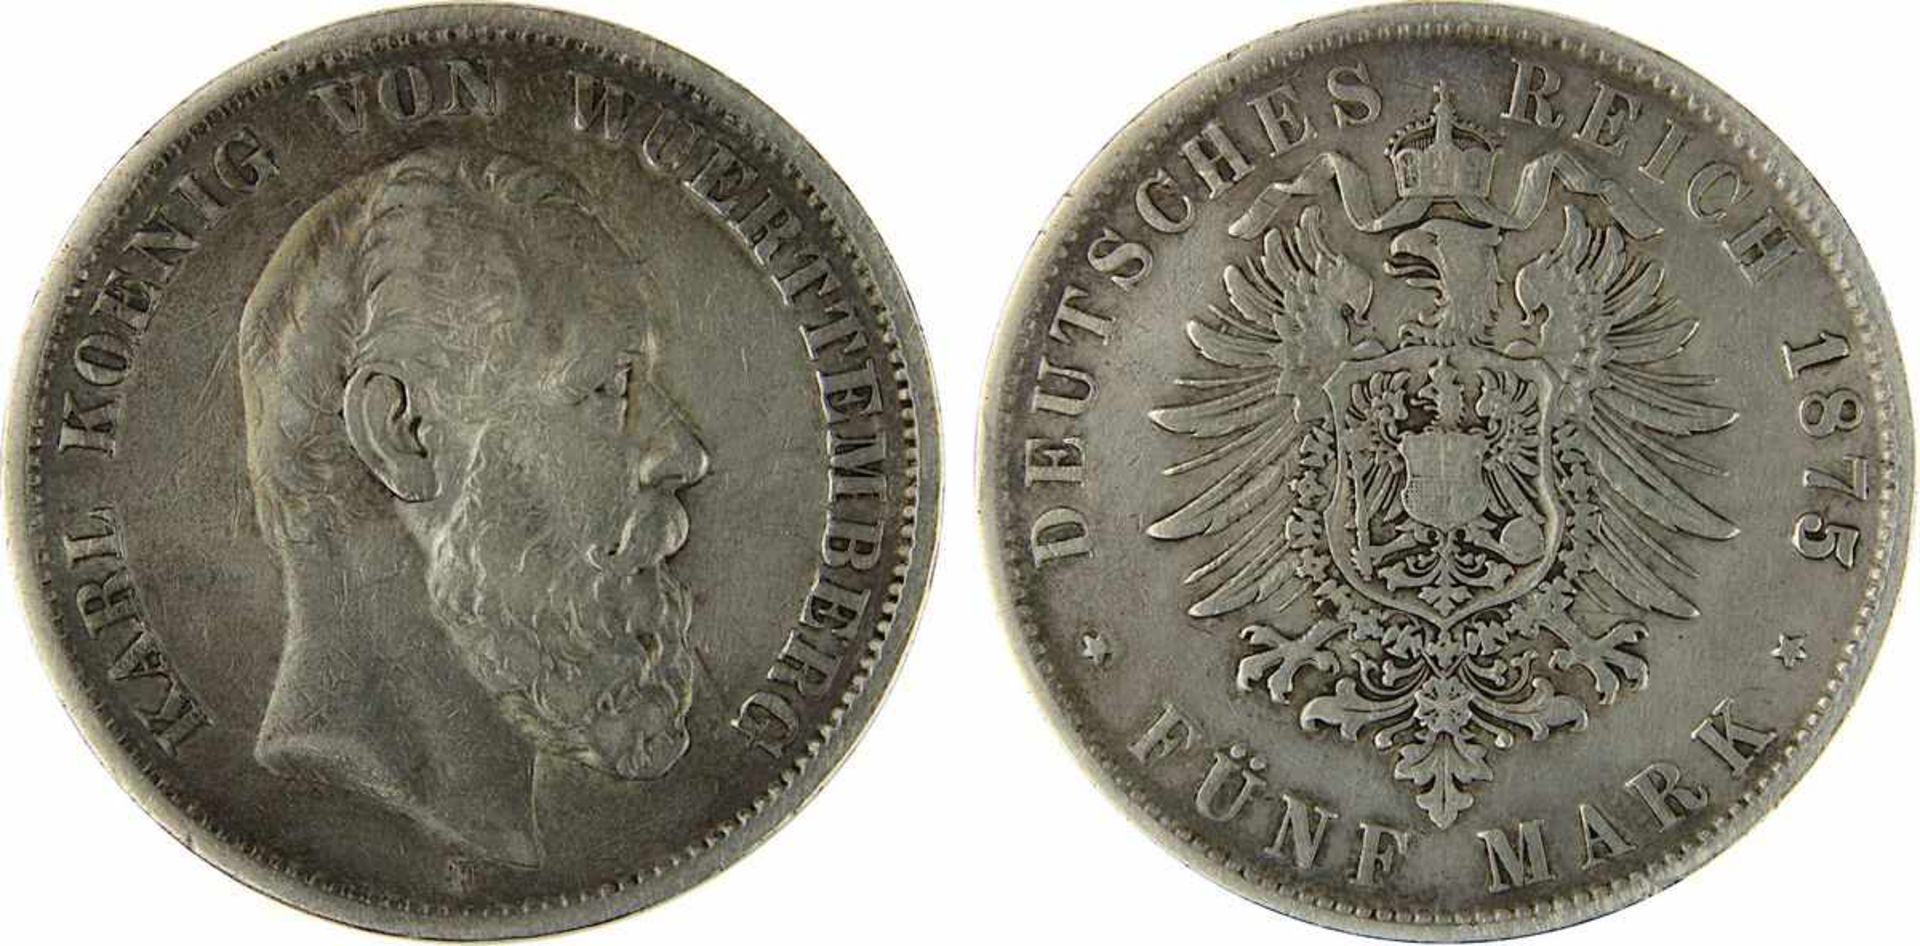 5 Mark 1875 F König Karl von Württemberg, Silber, sehr schöner Zustand, D 3,8 cm, Gewicht 27,43 g.